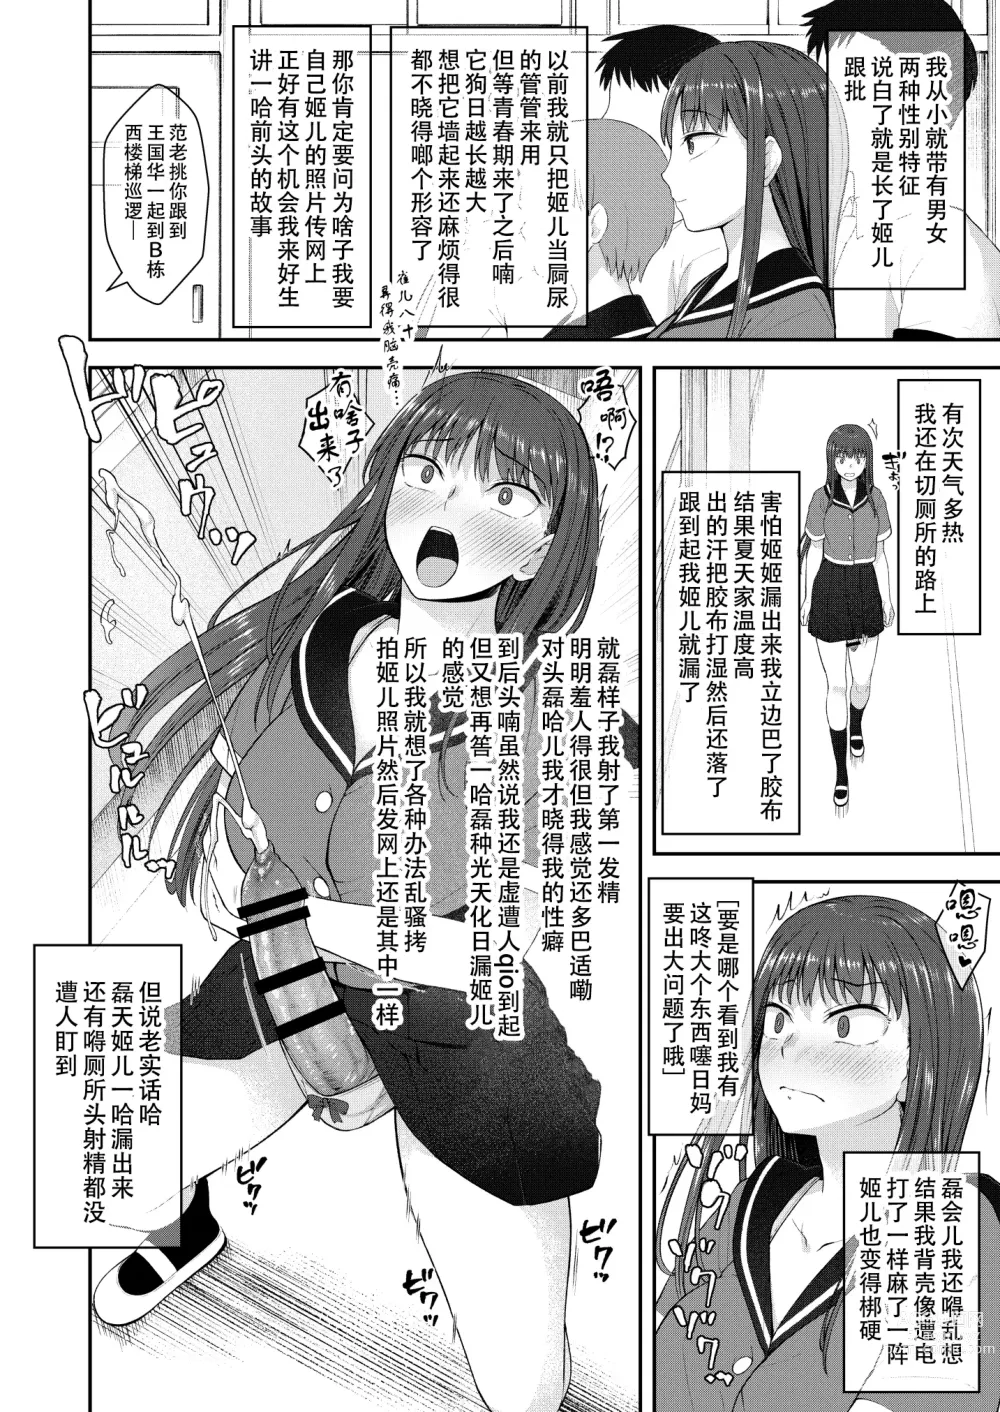 Page 3 of doujinshi Danseiki Roshutsu Jidori-han no Shoutai wa Kanojo dake ga Shitteiru.